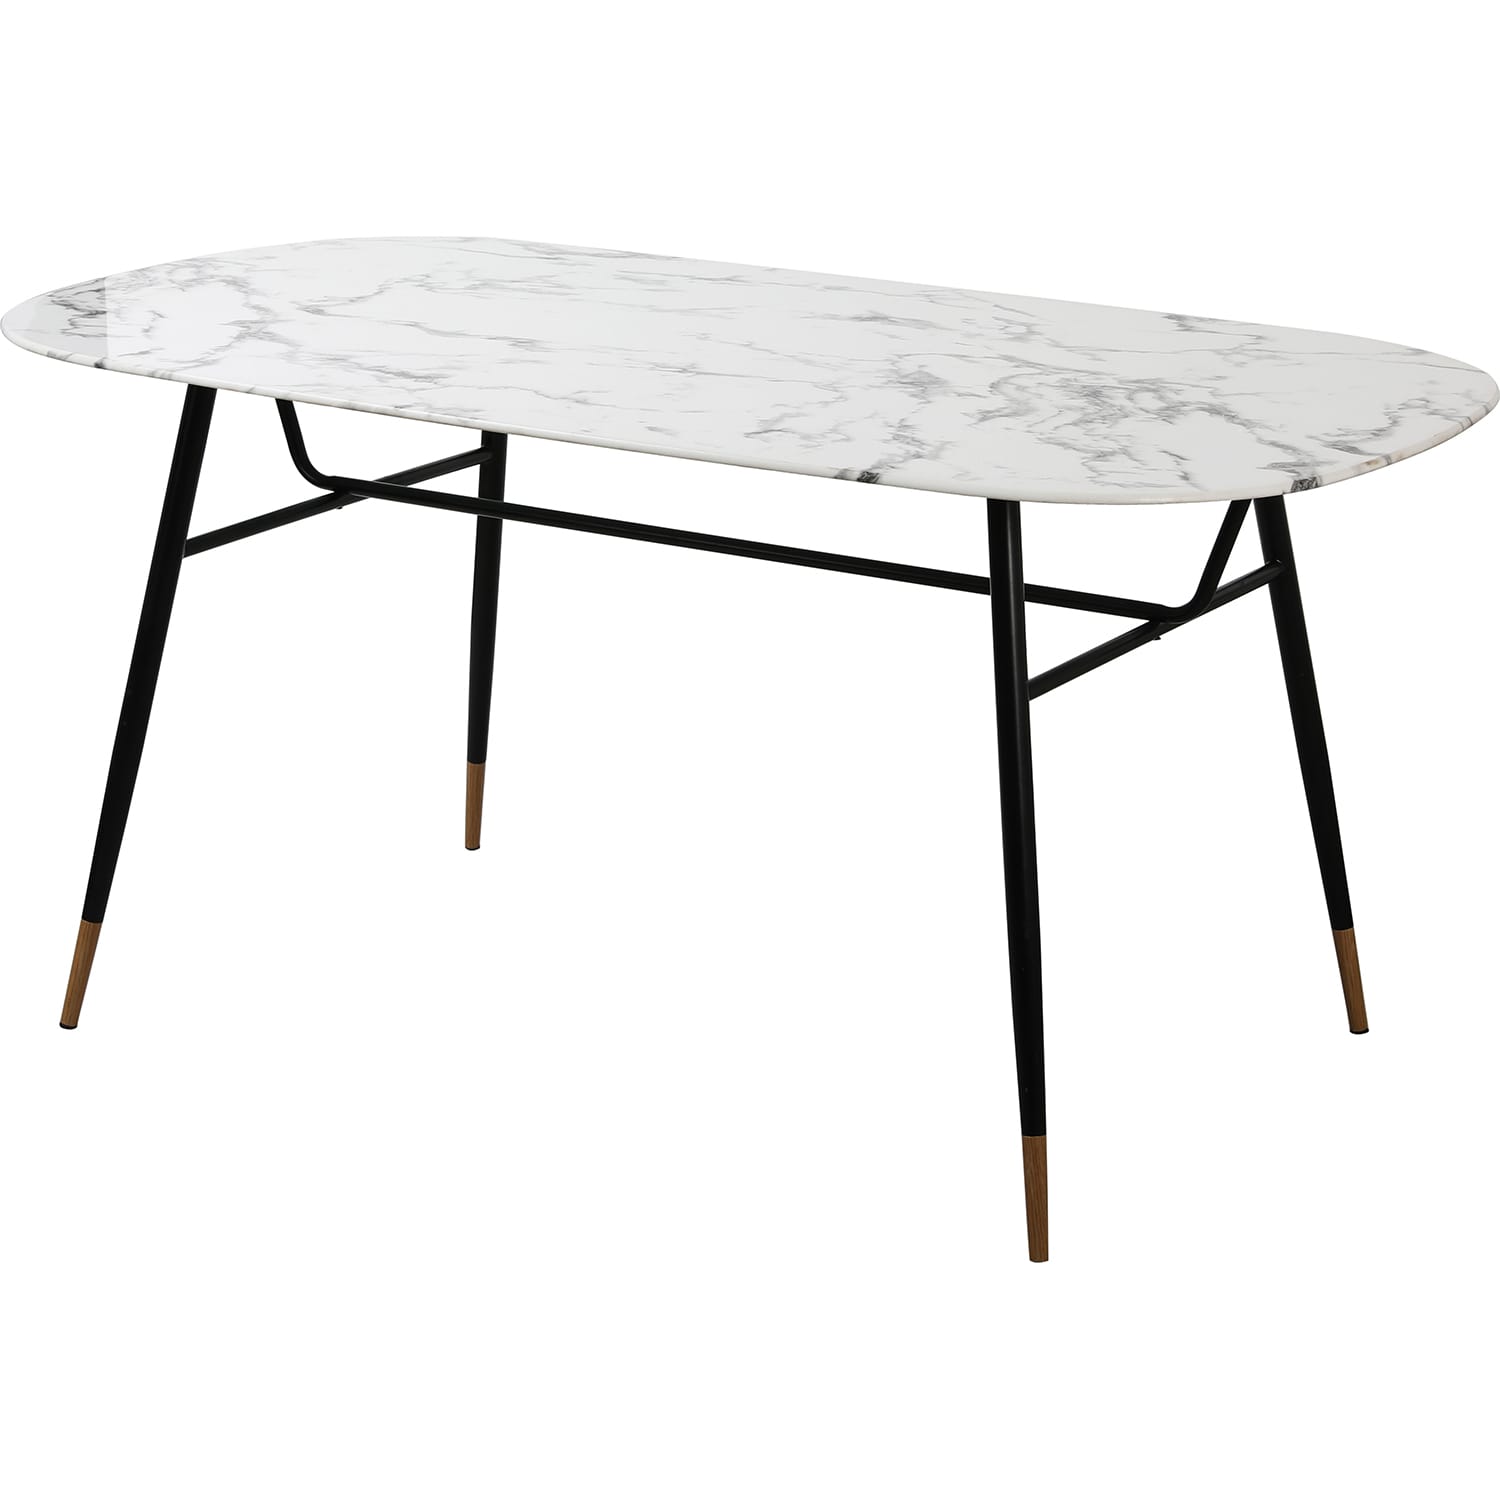 Tisch Glas Metall weiss 160 | Glastische | Esstische | Tische | Möbel |  mutoni möbel